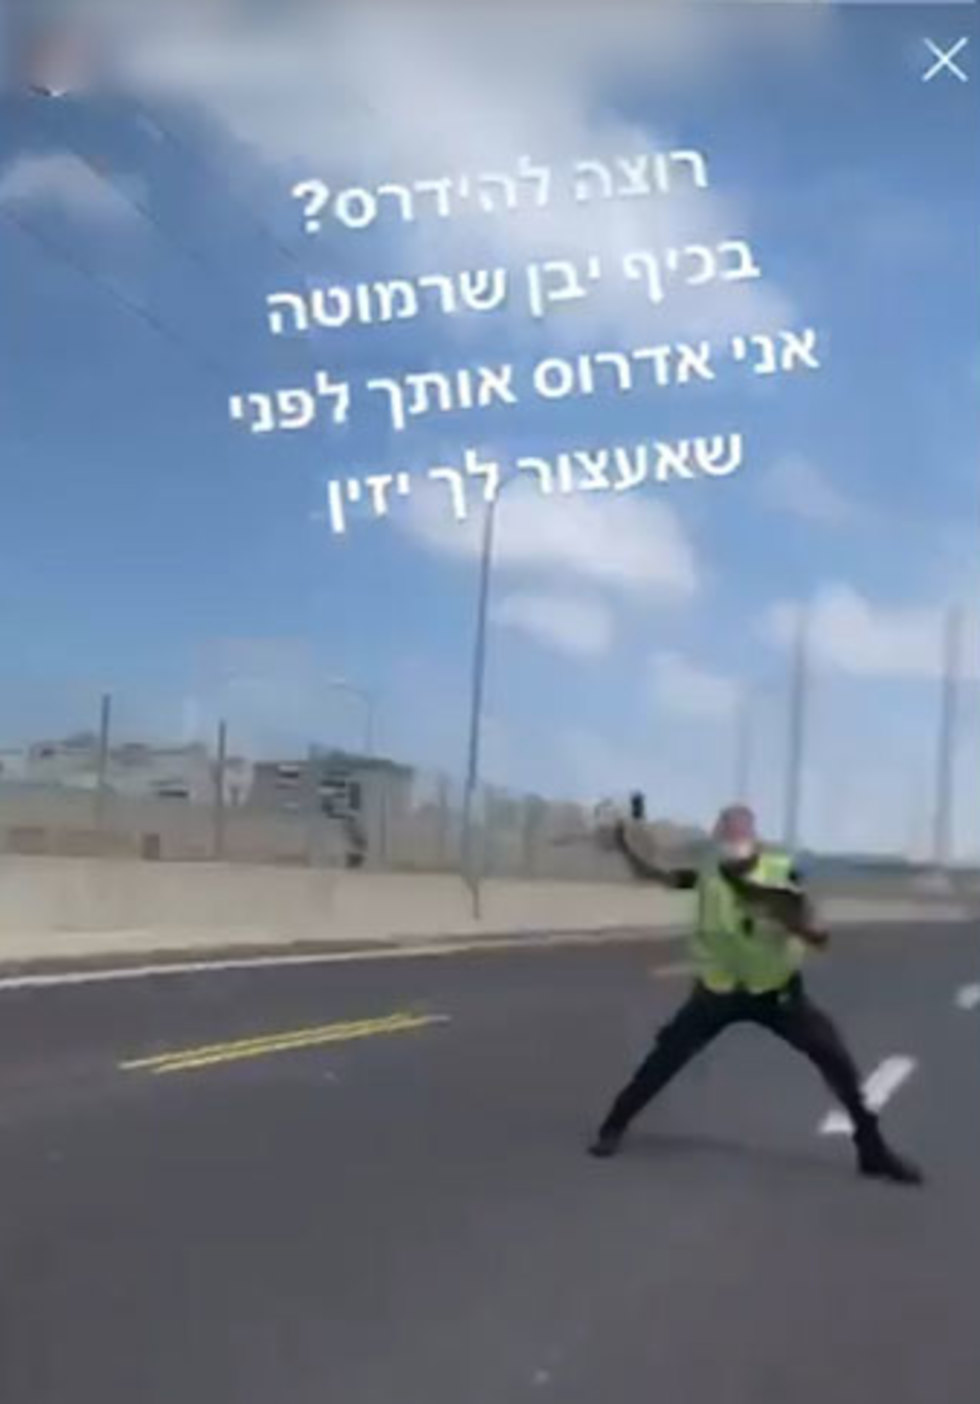 נעצר חשוד במעורבות הסרטון שהופץ בו מתועד רוכב שנמלט ממחסום ממשטרתי וכמעט פוגע בשוטרים ()